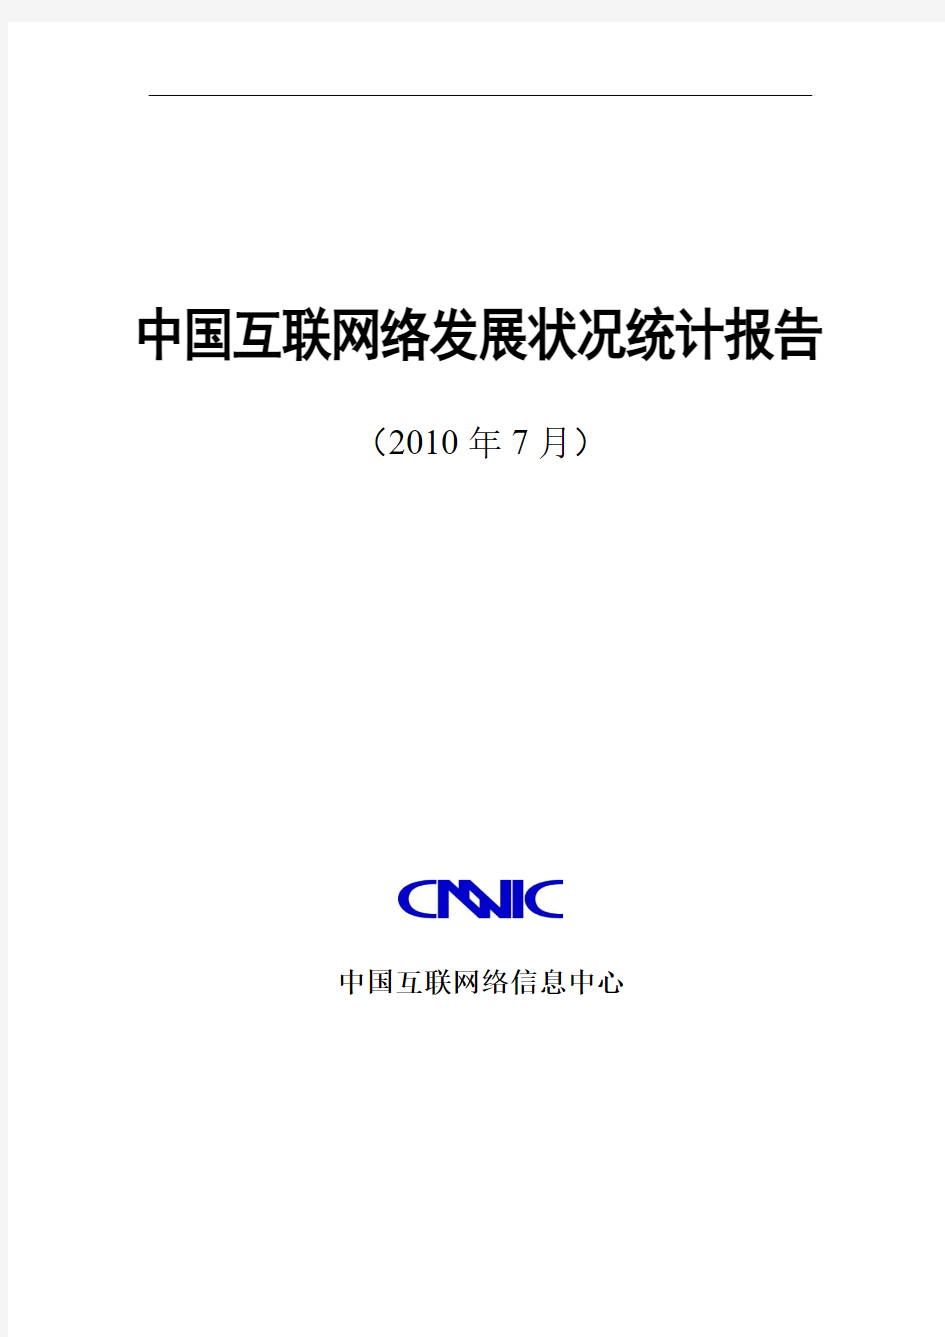 CNNIC在京发布《第26次中国互联网络发展状况报告》